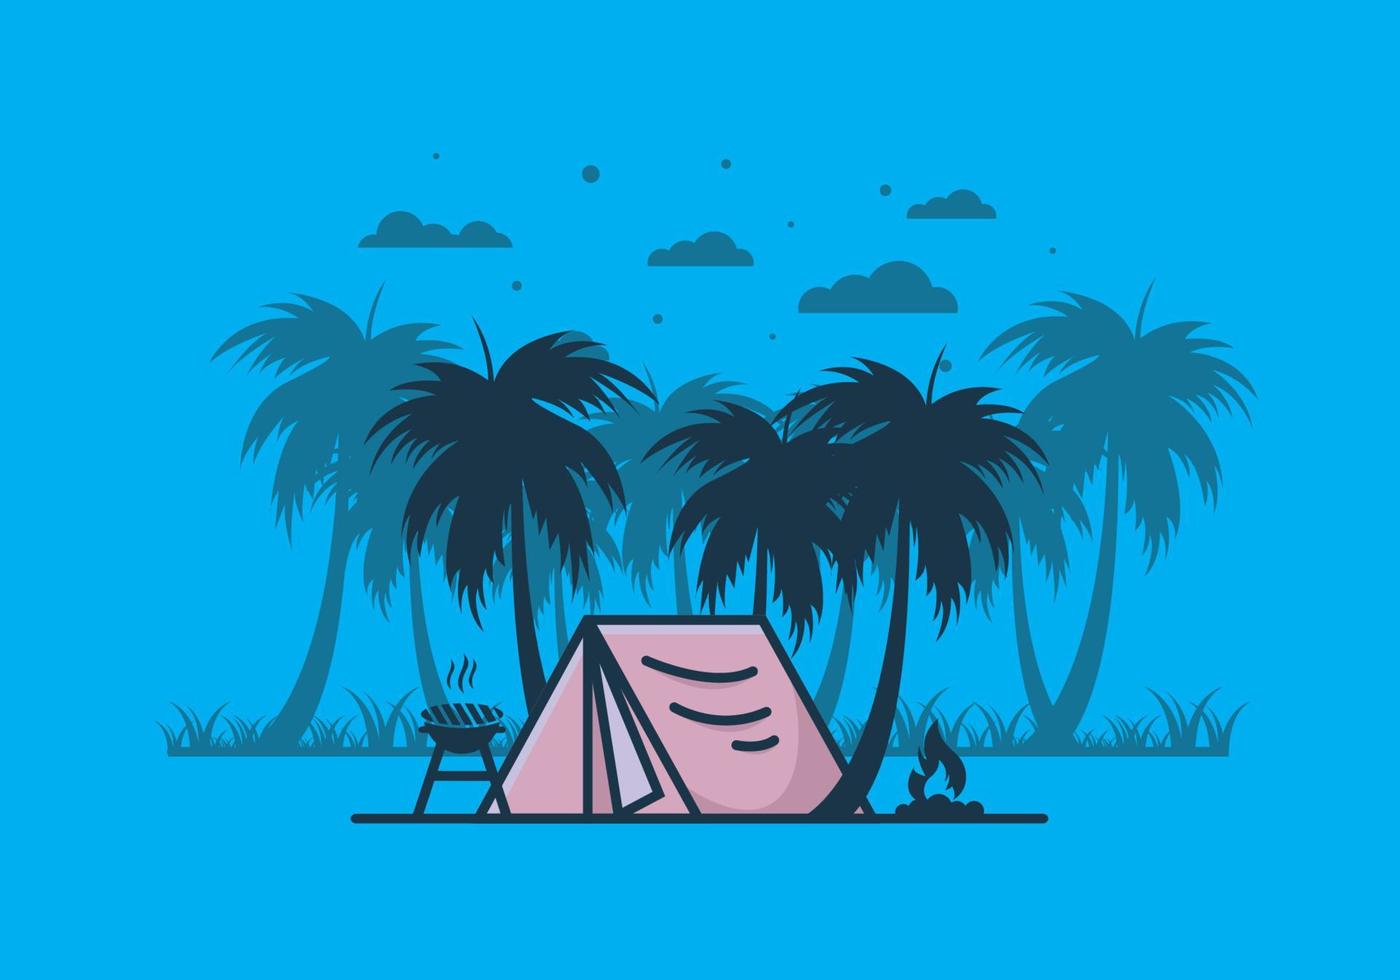 bunte campingzelt- und kokospalmenillustration vektor